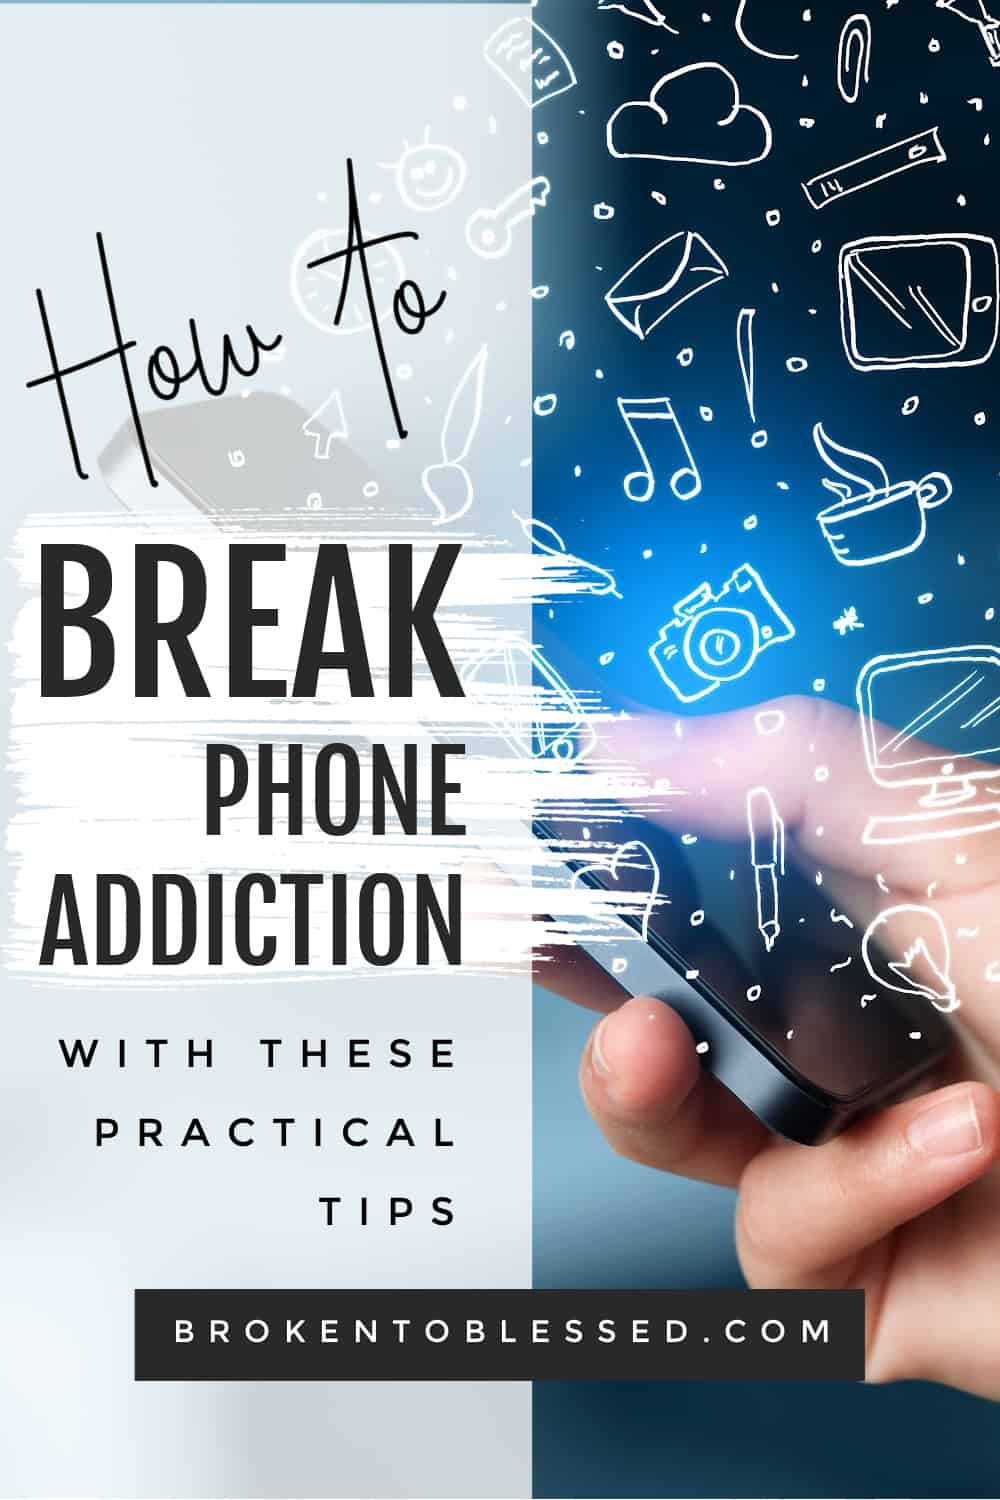 How to break phone addiction now pinterest image 